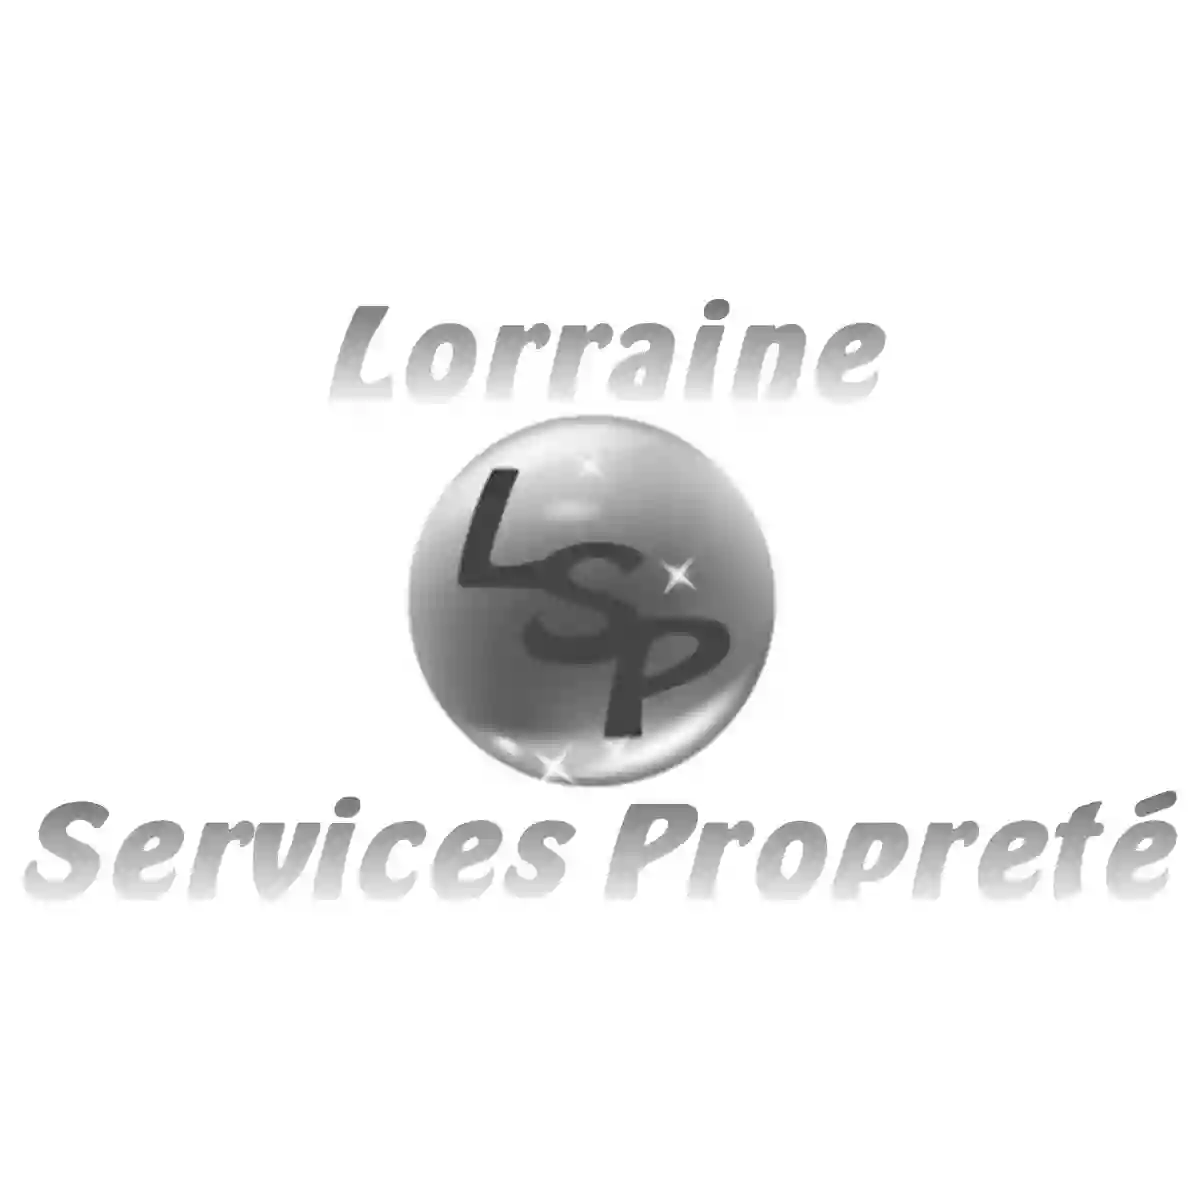 Lorraine Services Proprete Proprete